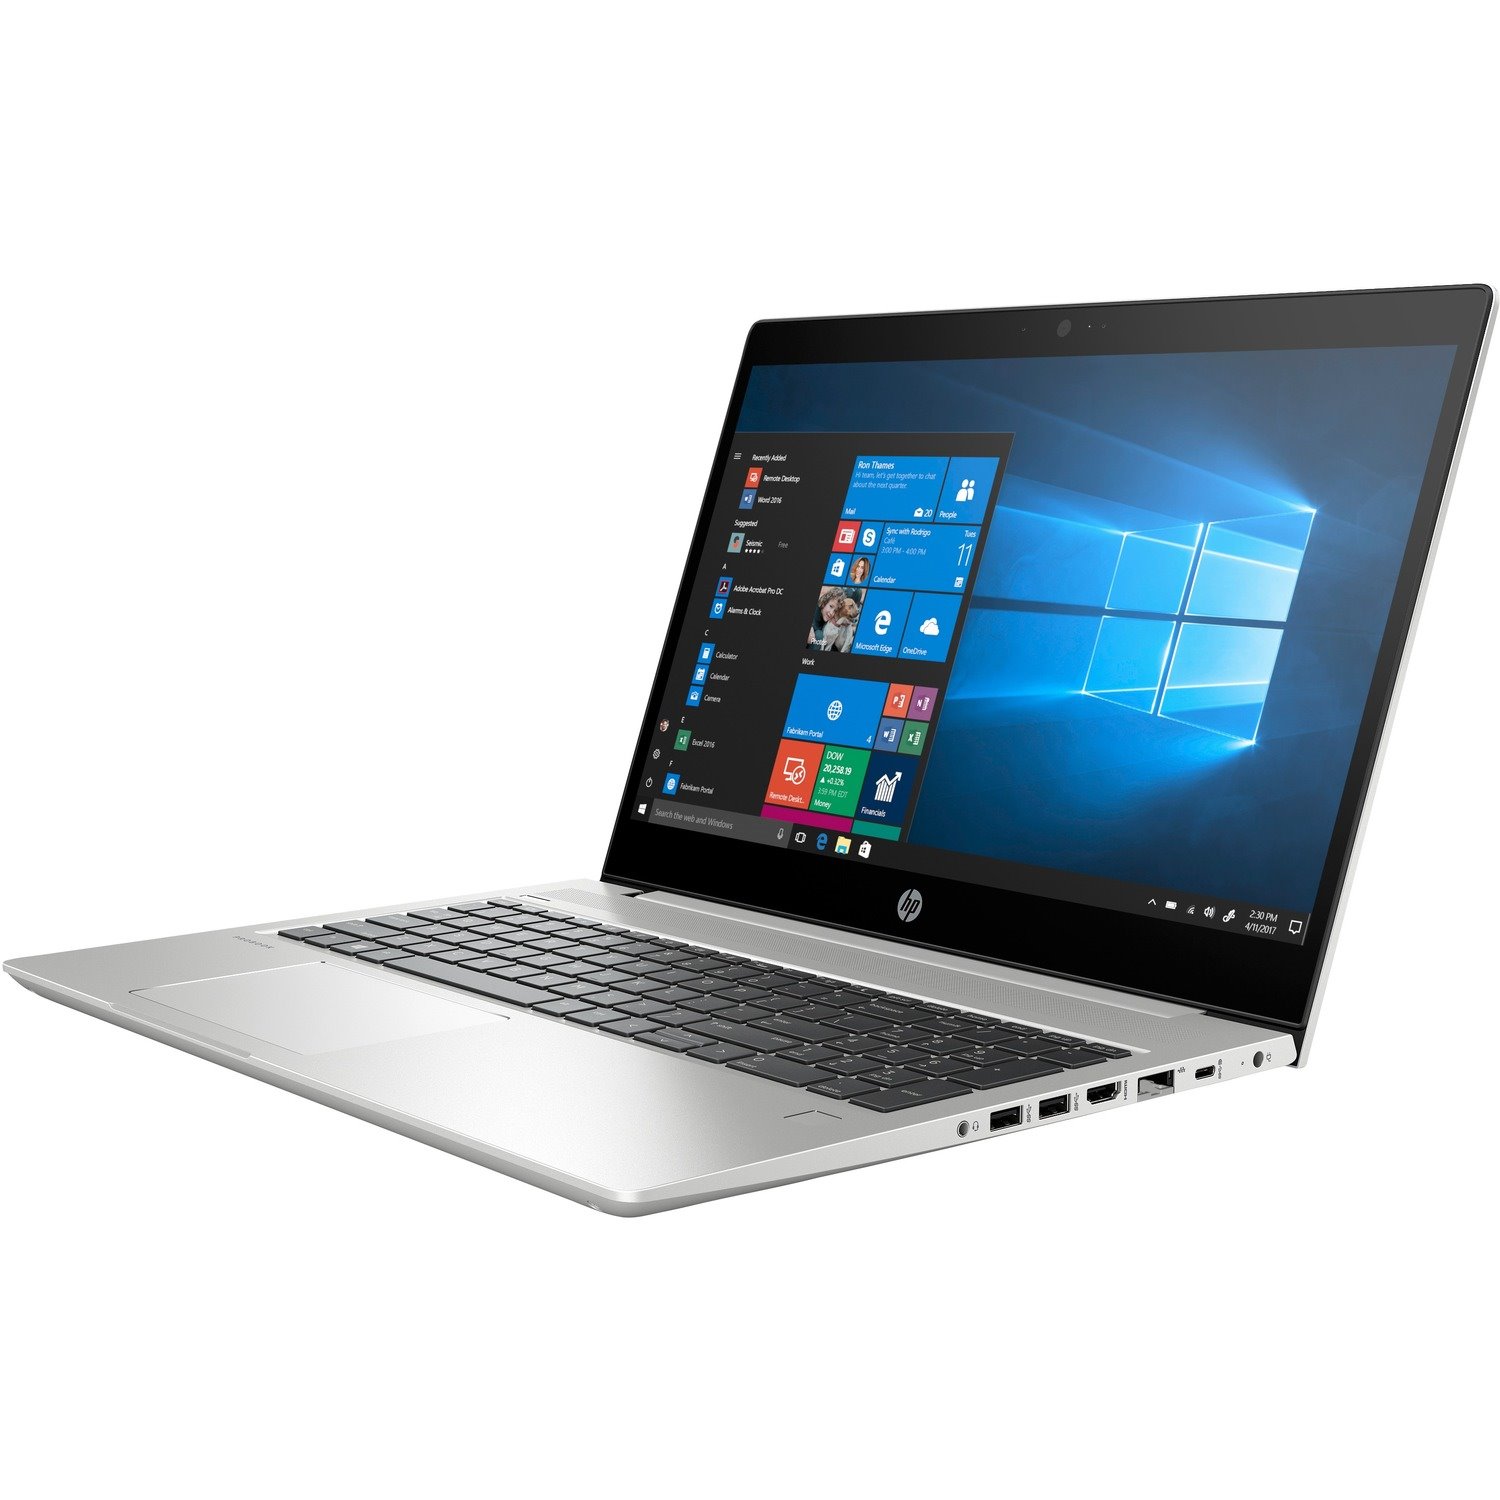 HP ProBook 455R G6 39.6 cm (15.6") Notebook - 1366 x 768 - AMD Ryzen 5 3500U Quad-core (4 Core) 2.10 GHz - 8 GB Total RAM - 256 GB SSD - Pike Silver Aluminum